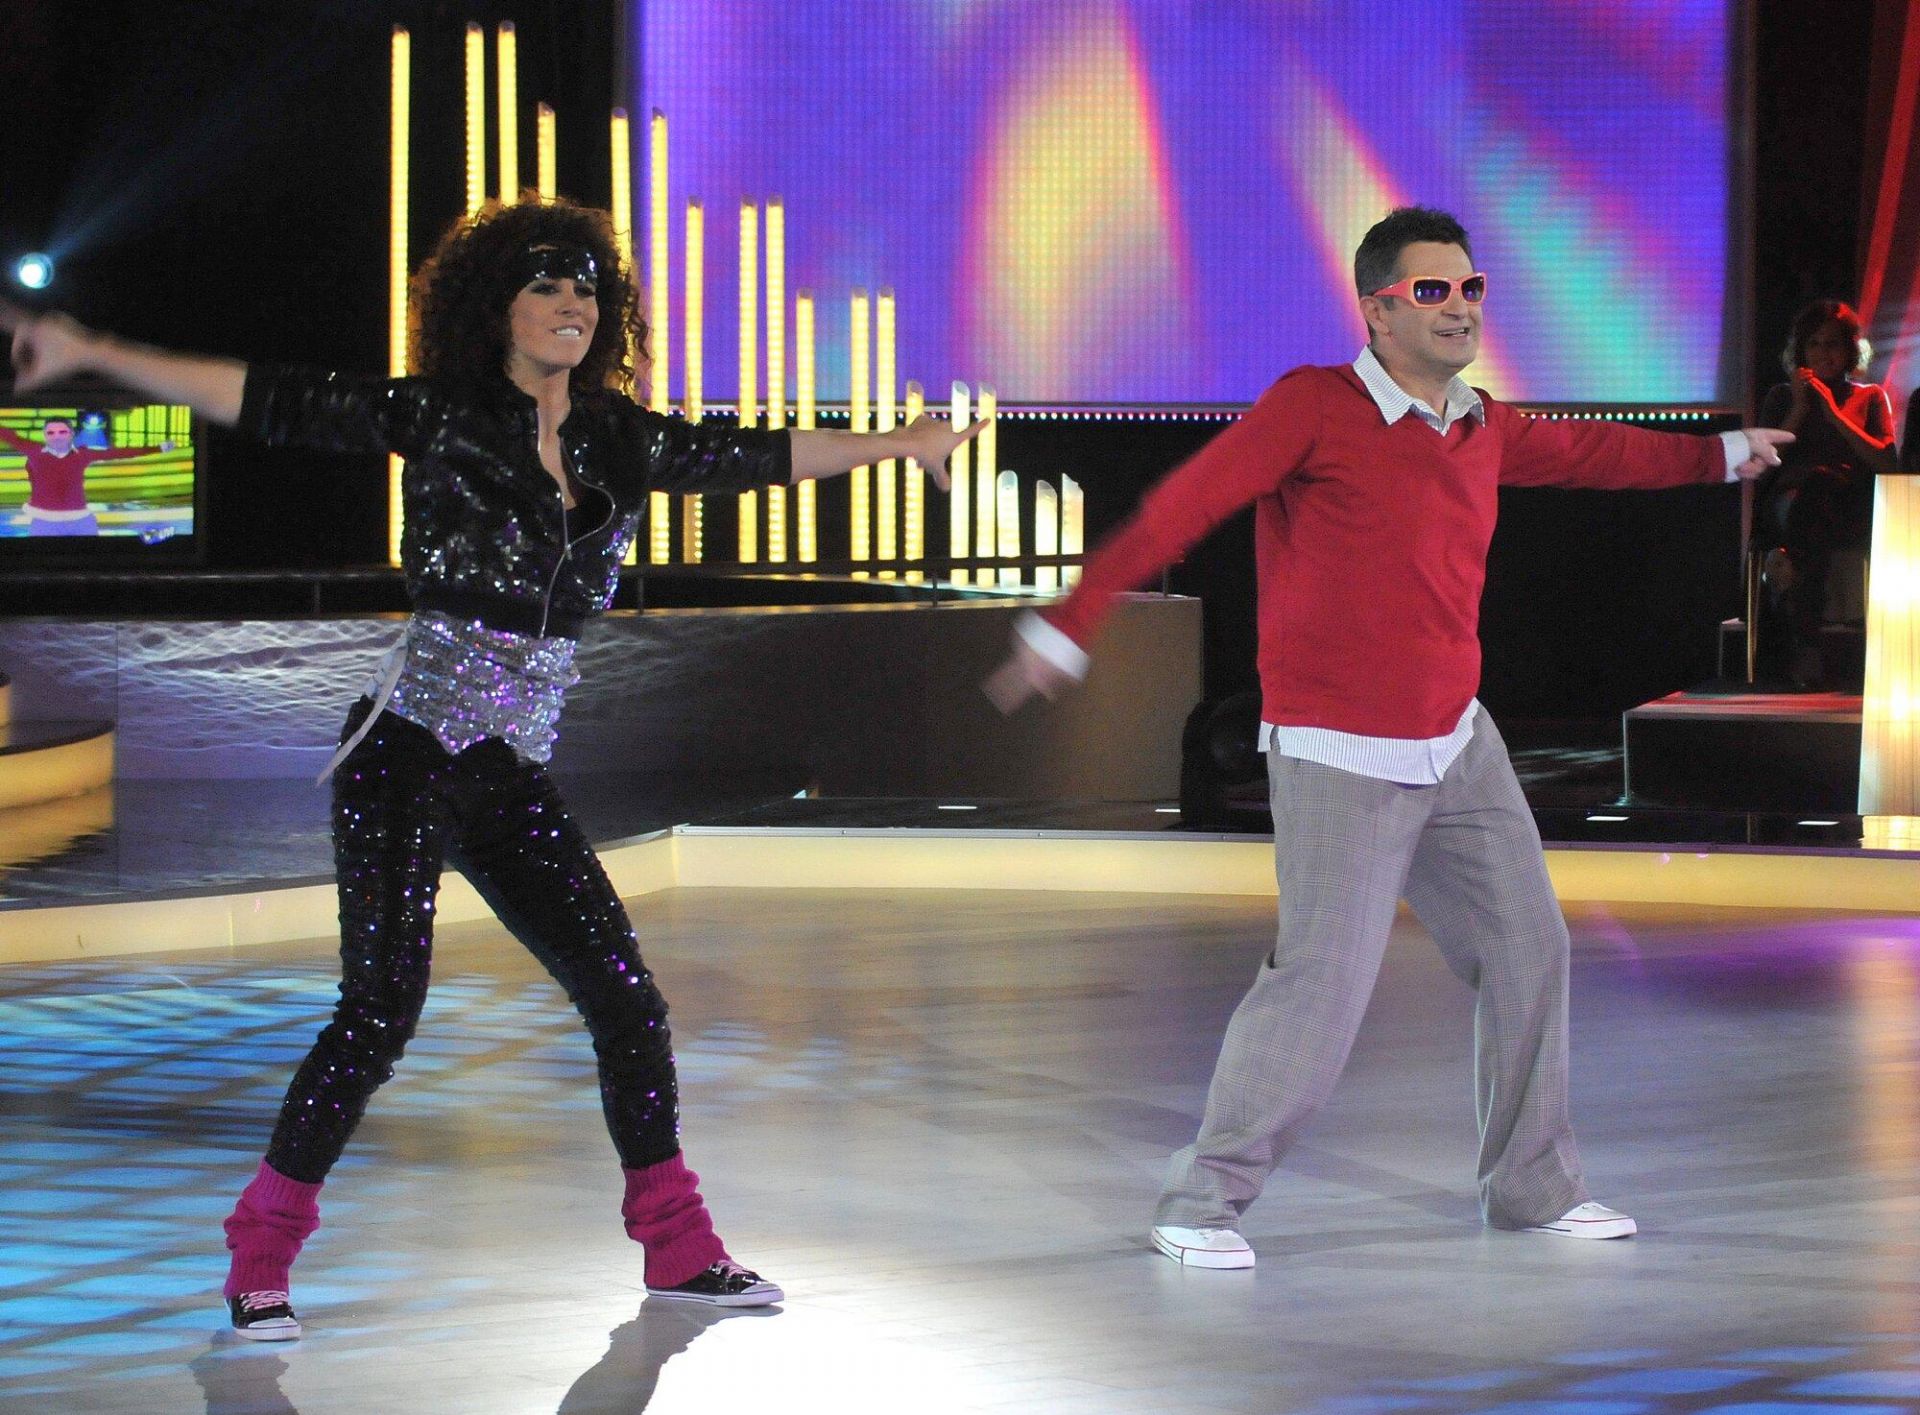 17 октомври 2009 г. - Милен Цветков танцува с риалити звездата Зара в елиминация от тв шоуто VIP Dance.